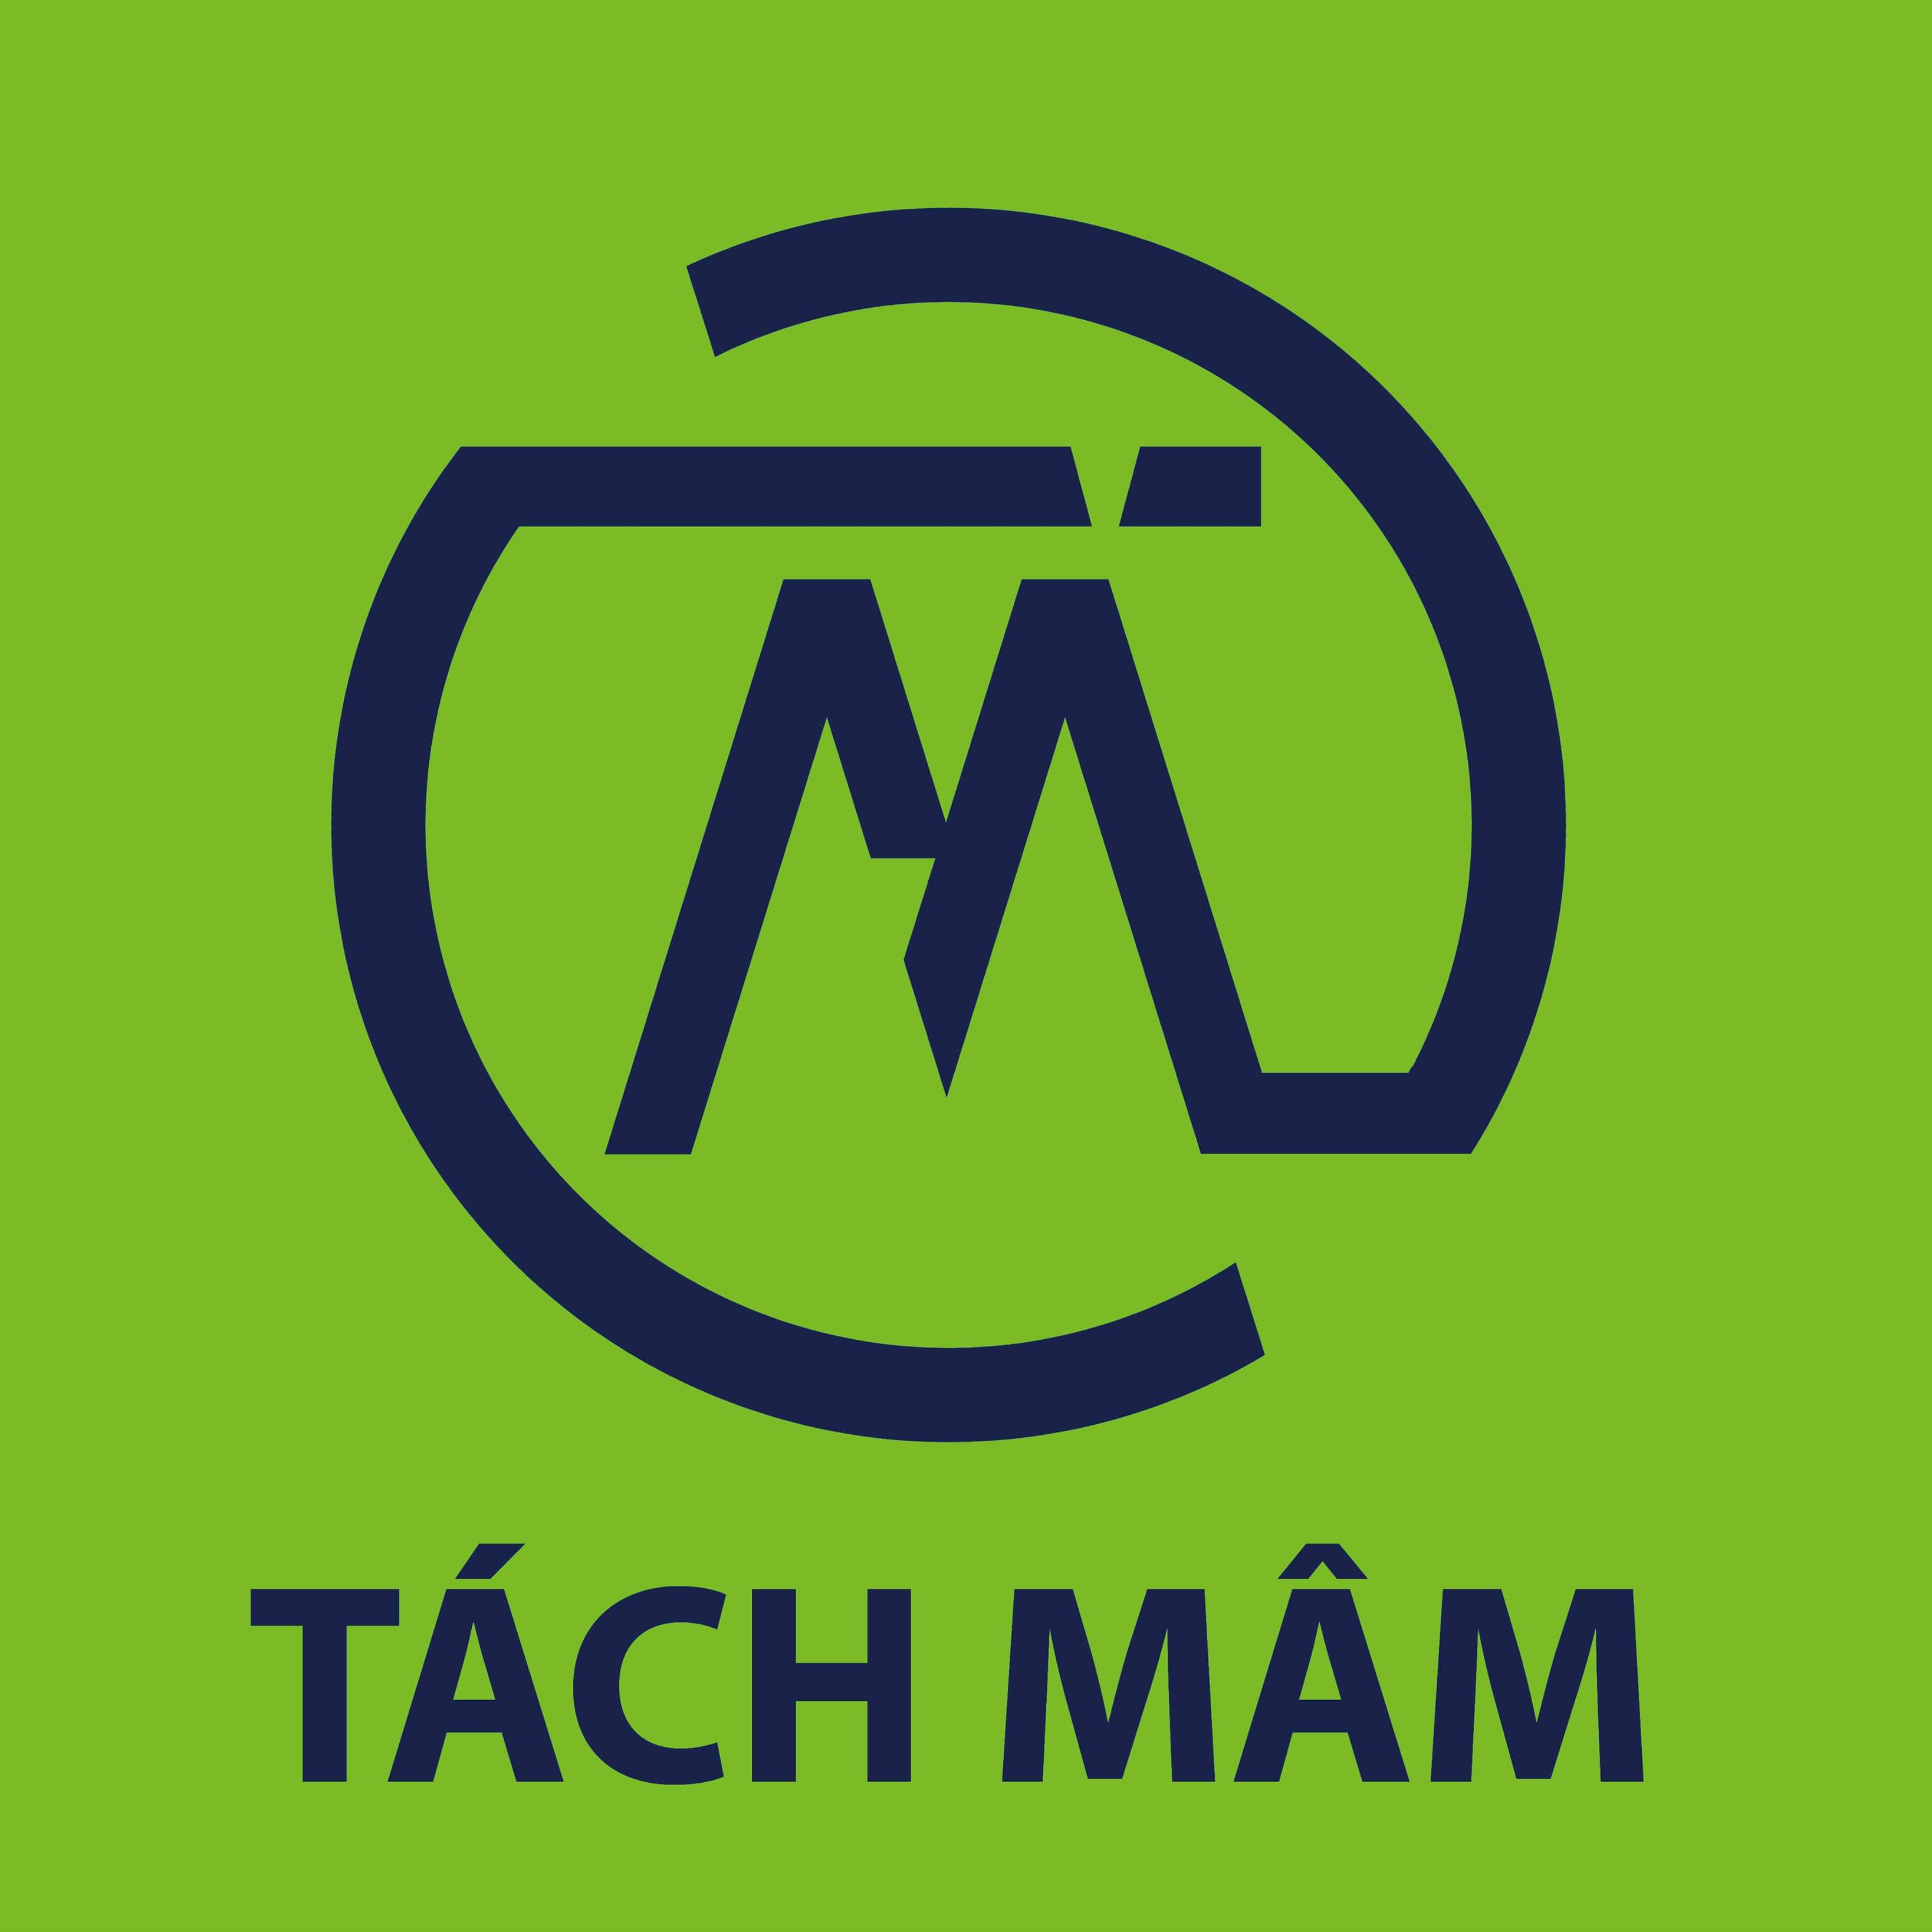 Tachmam Club